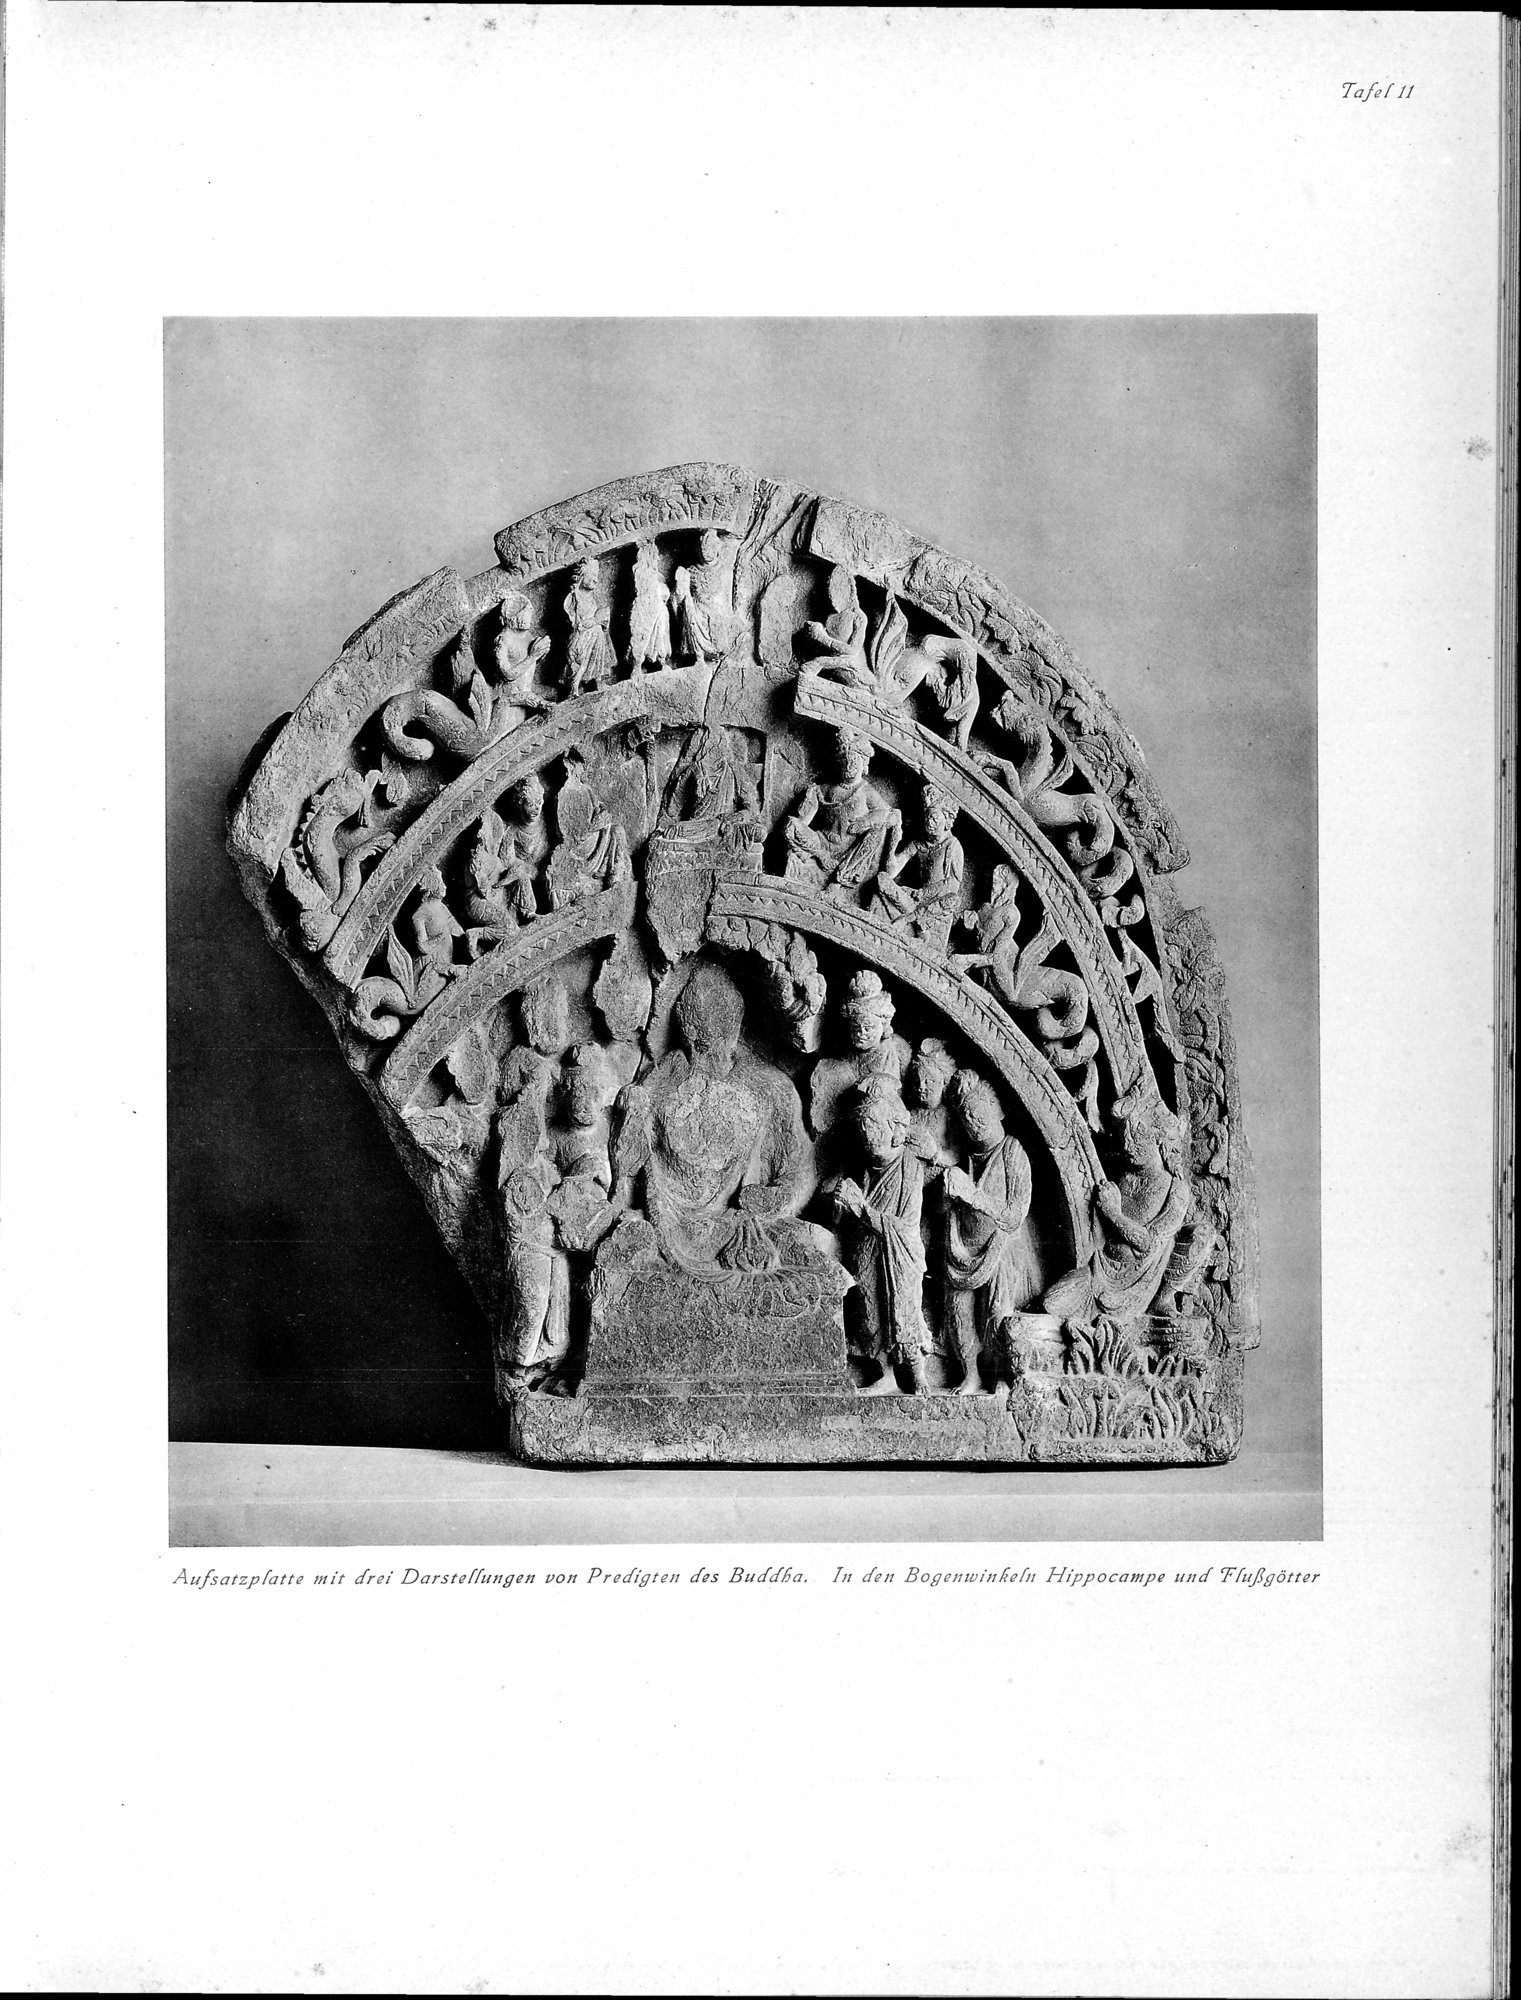 Die Buddhistische Spätantike in Mittelasien : vol.1 / Page 55 (Grayscale High Resolution Image)